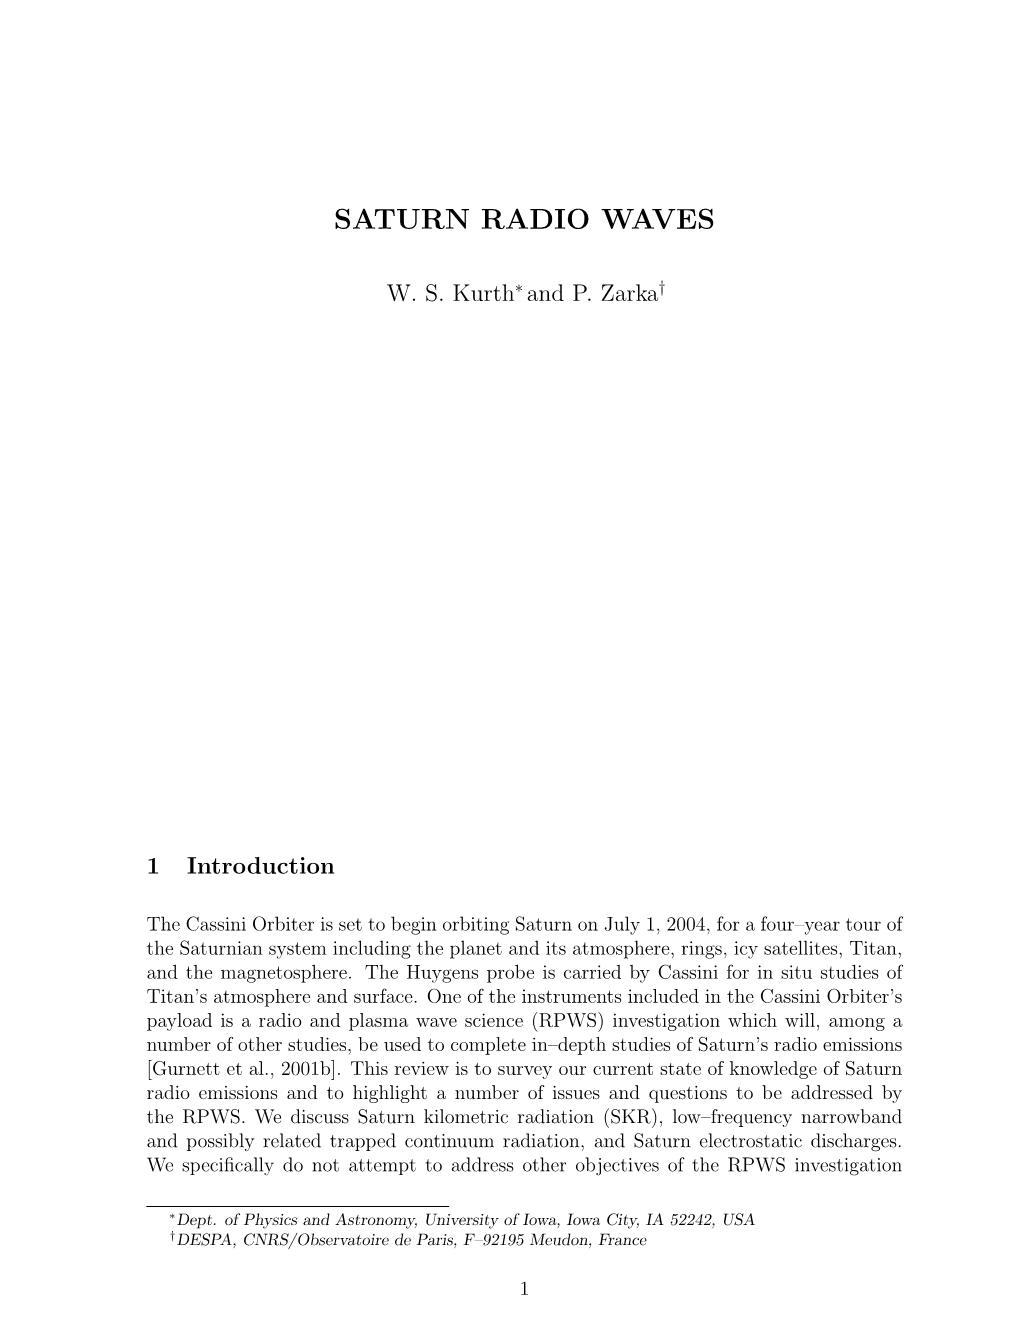 Saturn Radio Waves